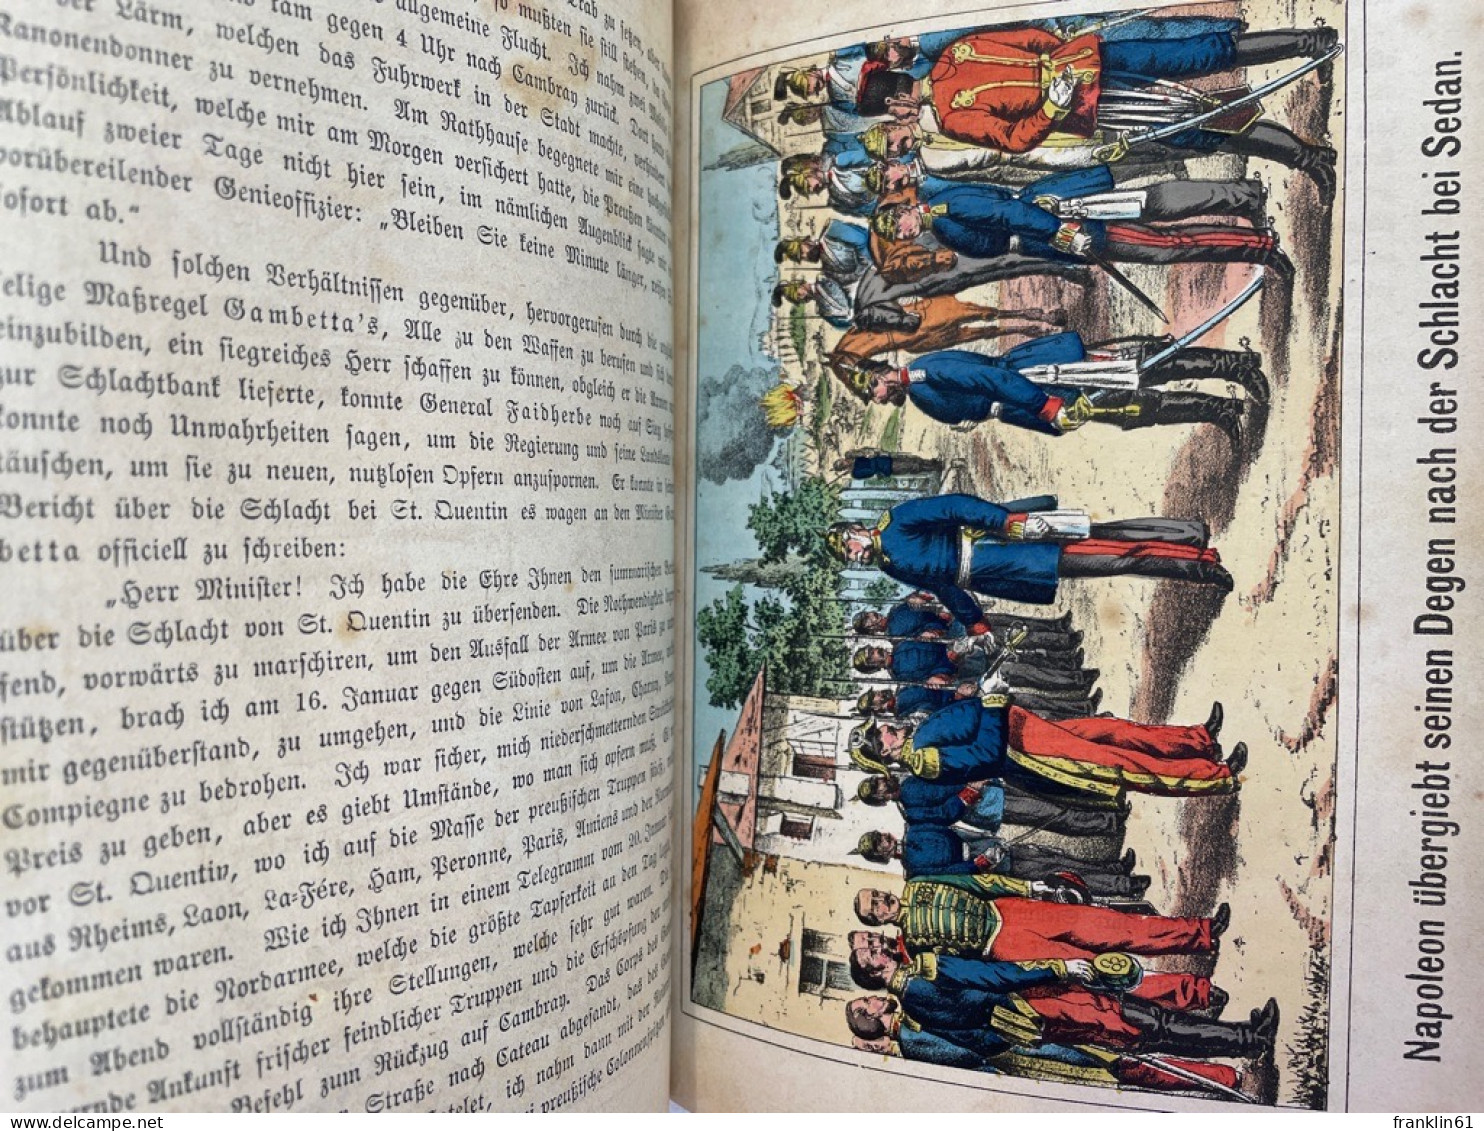 Die neuesten Weltereignisse 1870-71. oder: Der große Kampf der deutschen Nation gegen Frankreich.